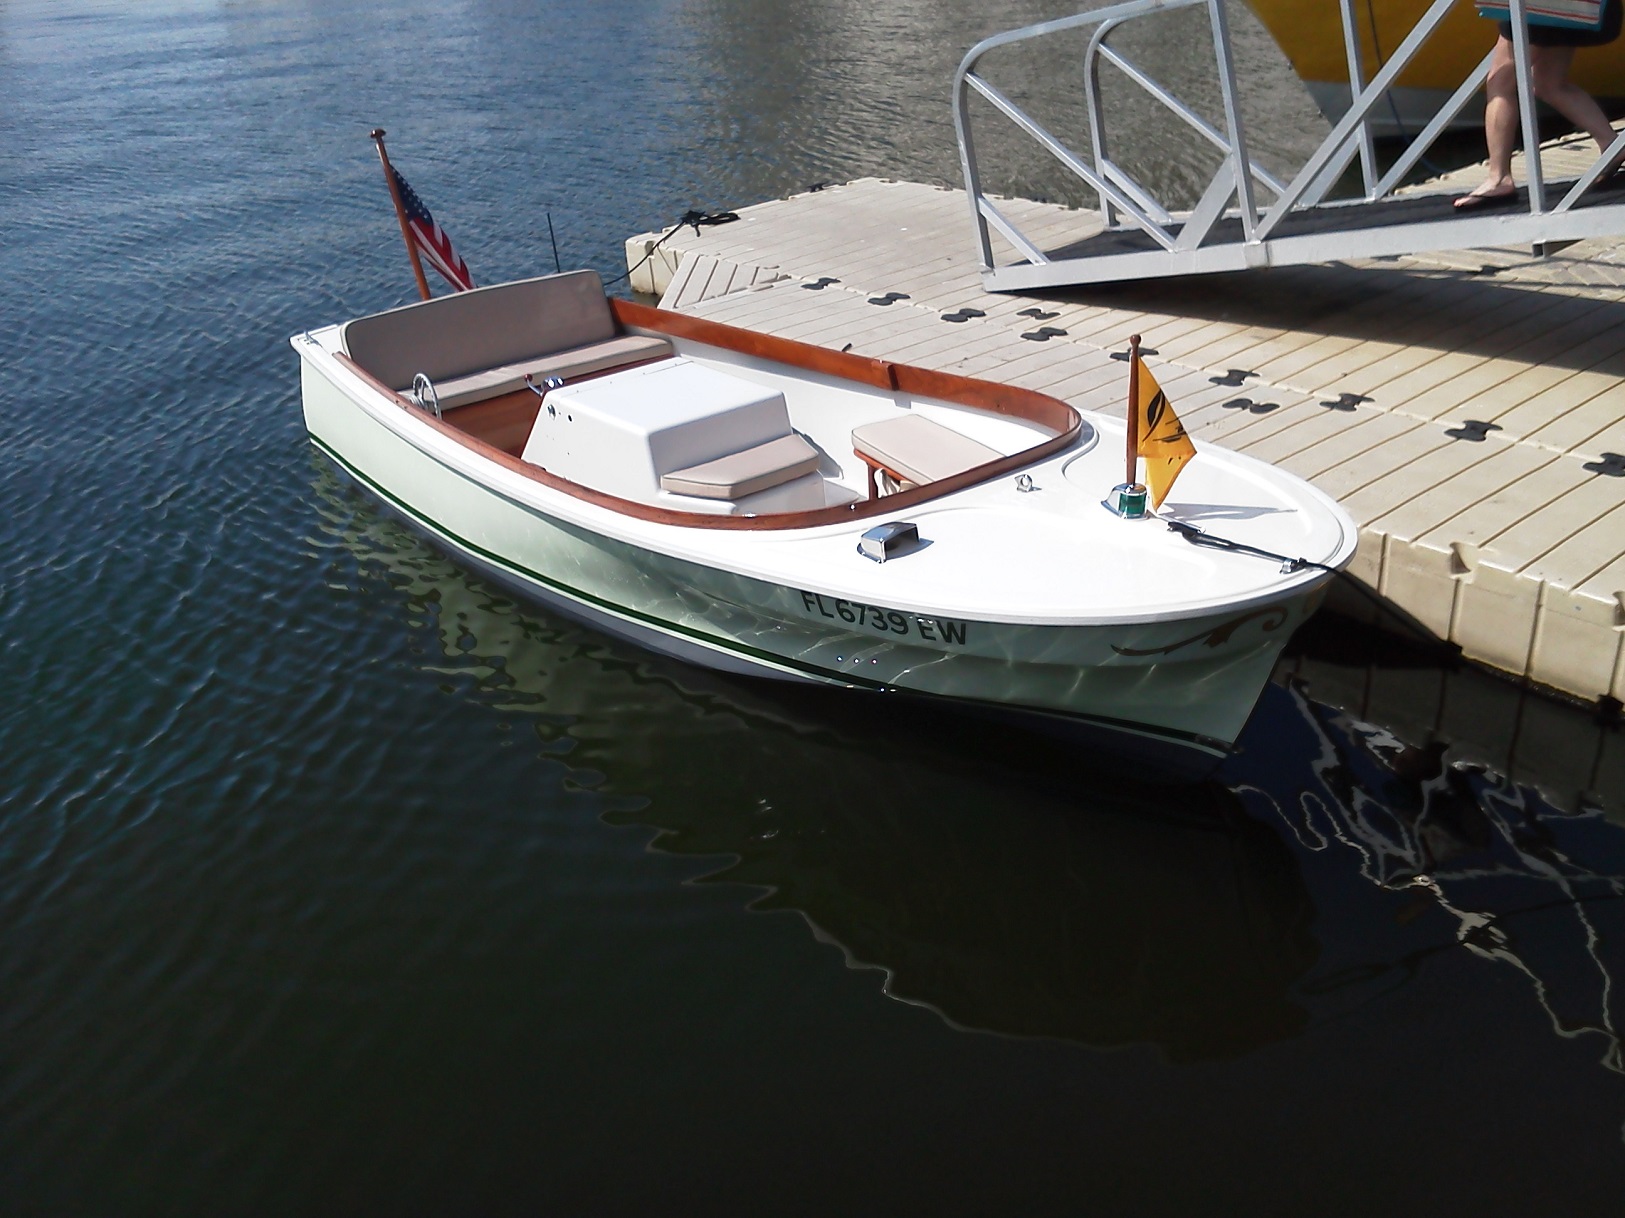 Buy 105-K Fiberglass Boat Repair Kit Online Australia